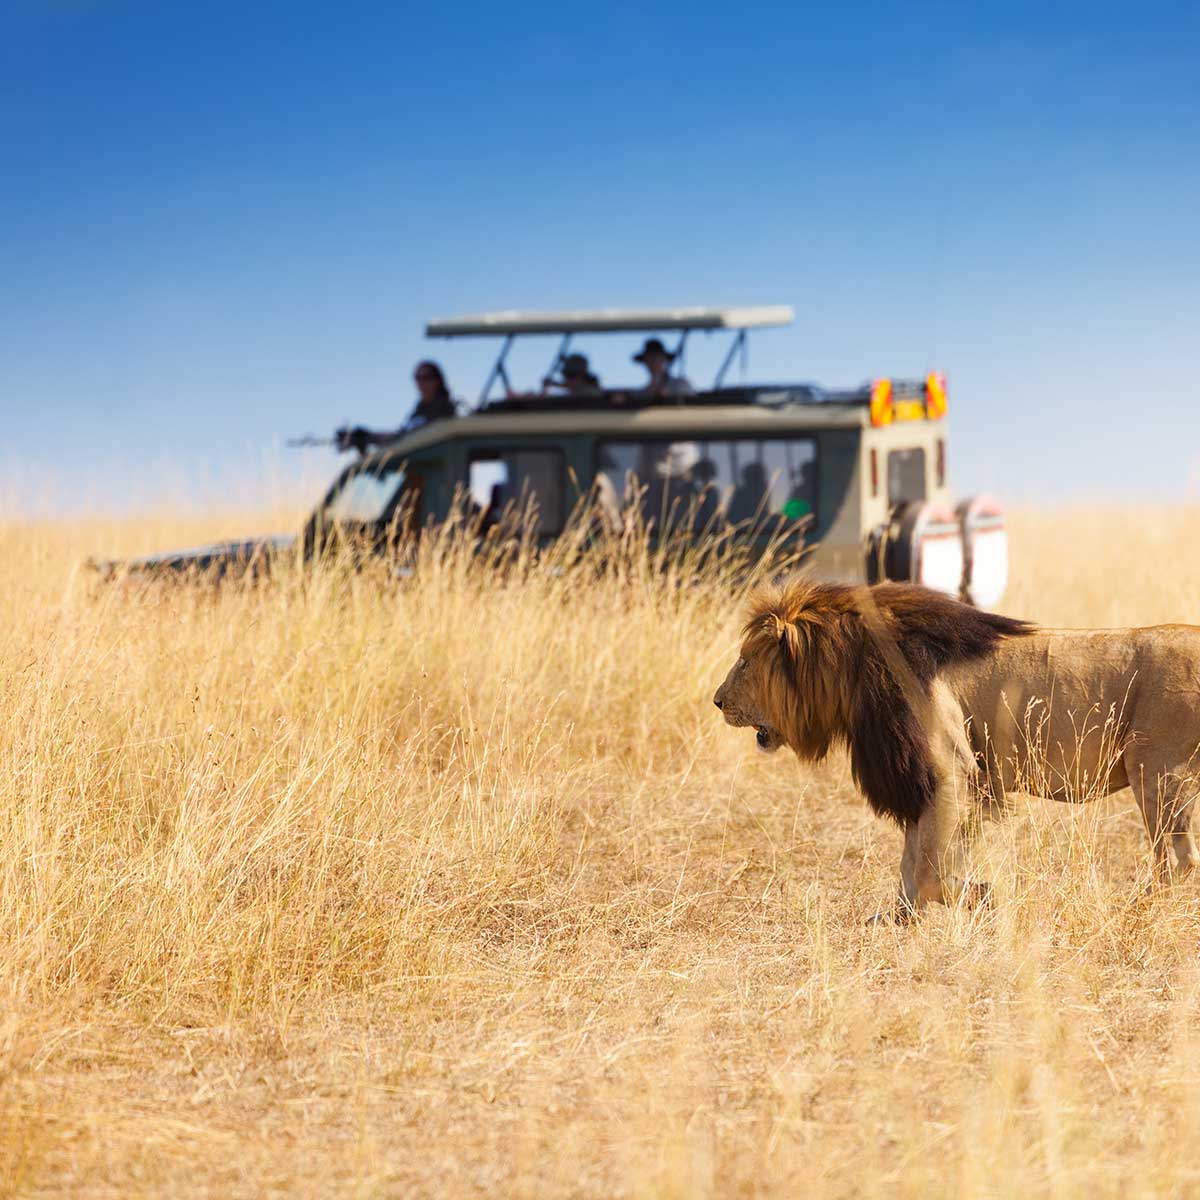 Lion safari tour operator